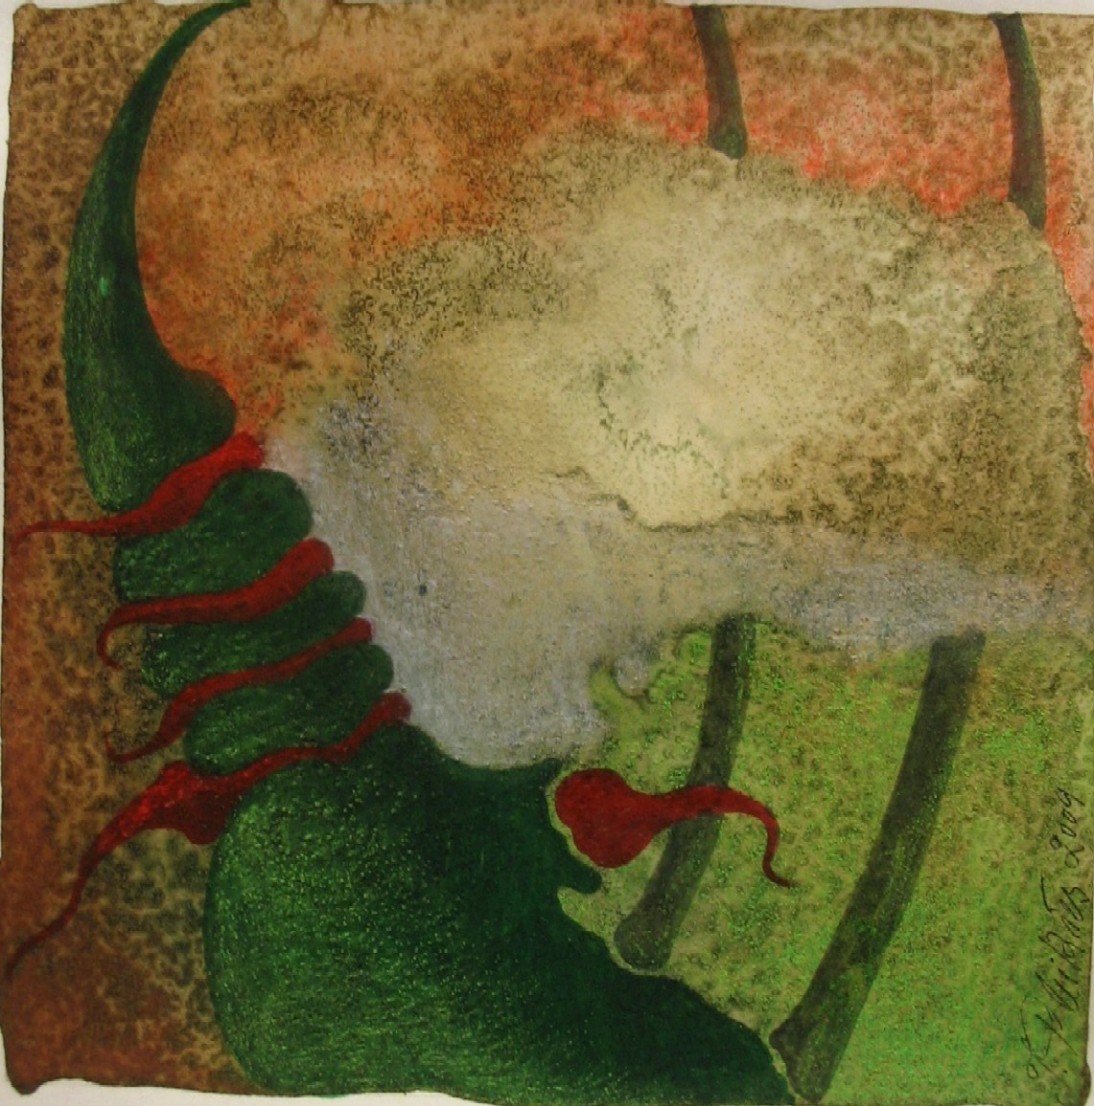 juergen pleikies: ohne Titelmeditative Aquarelle - von 2009 - Gre 20 x 20 cm